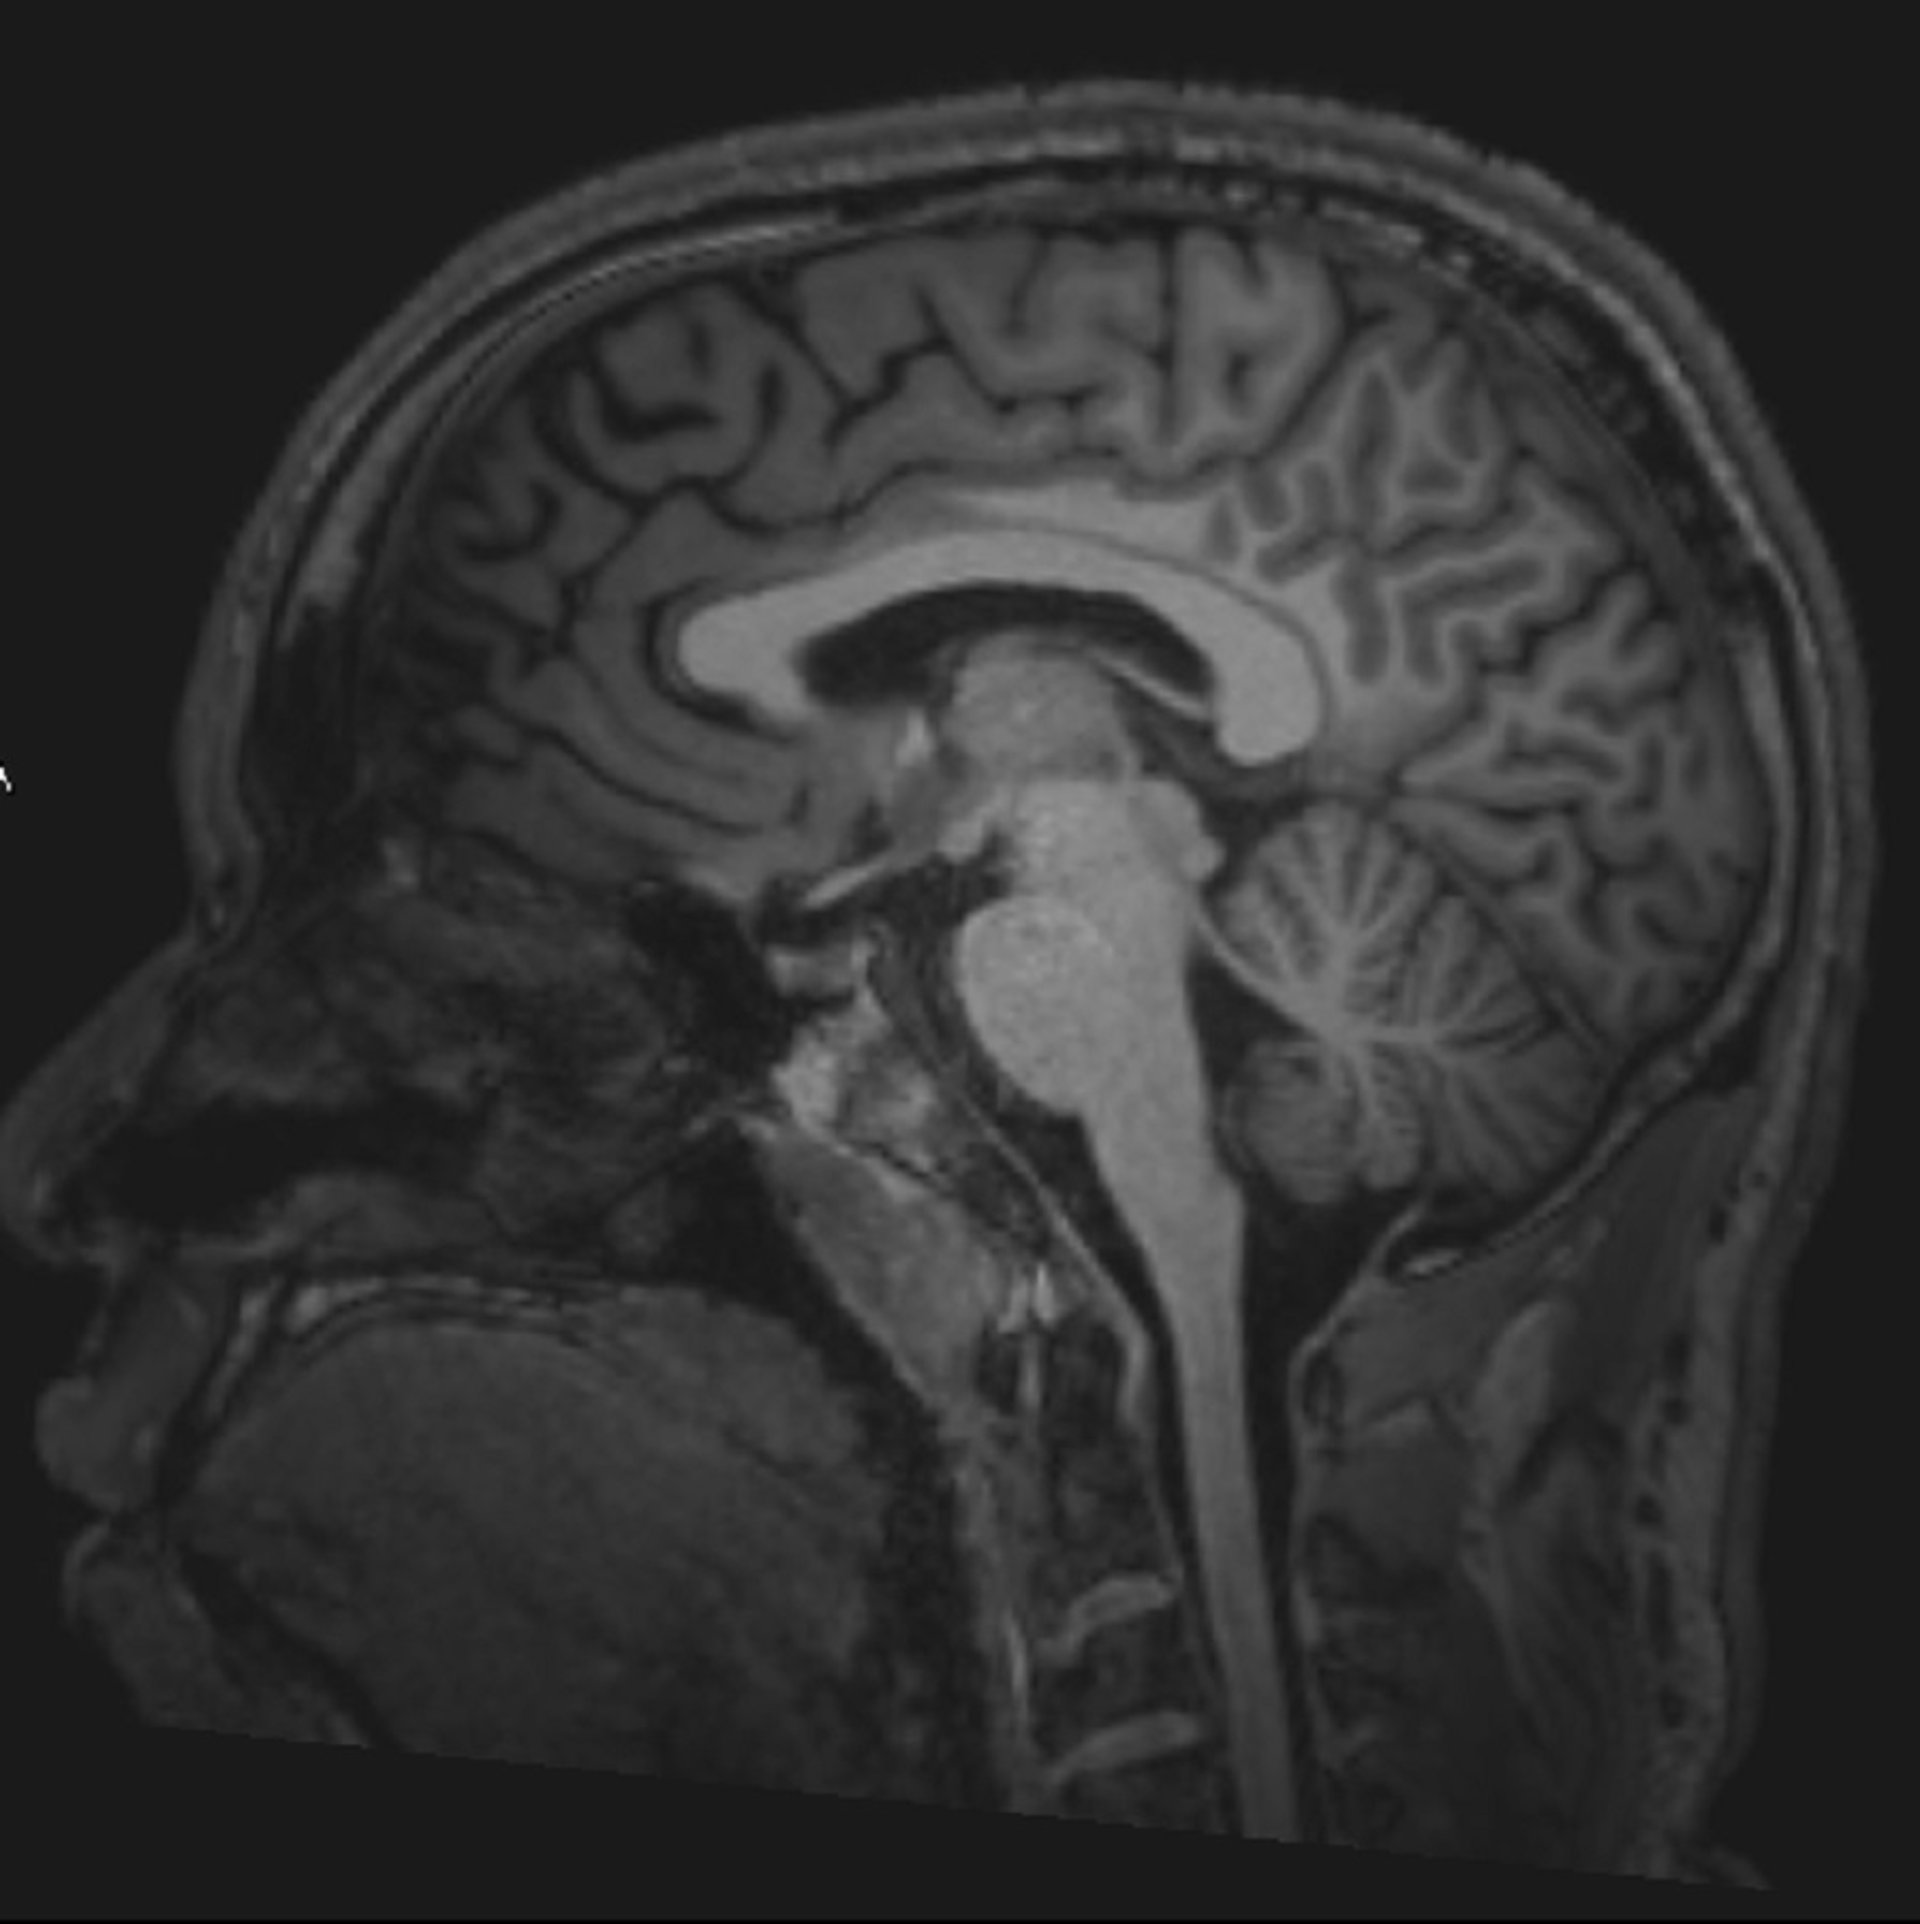 正常脑部 MRI（矢状面）——幻灯片 3